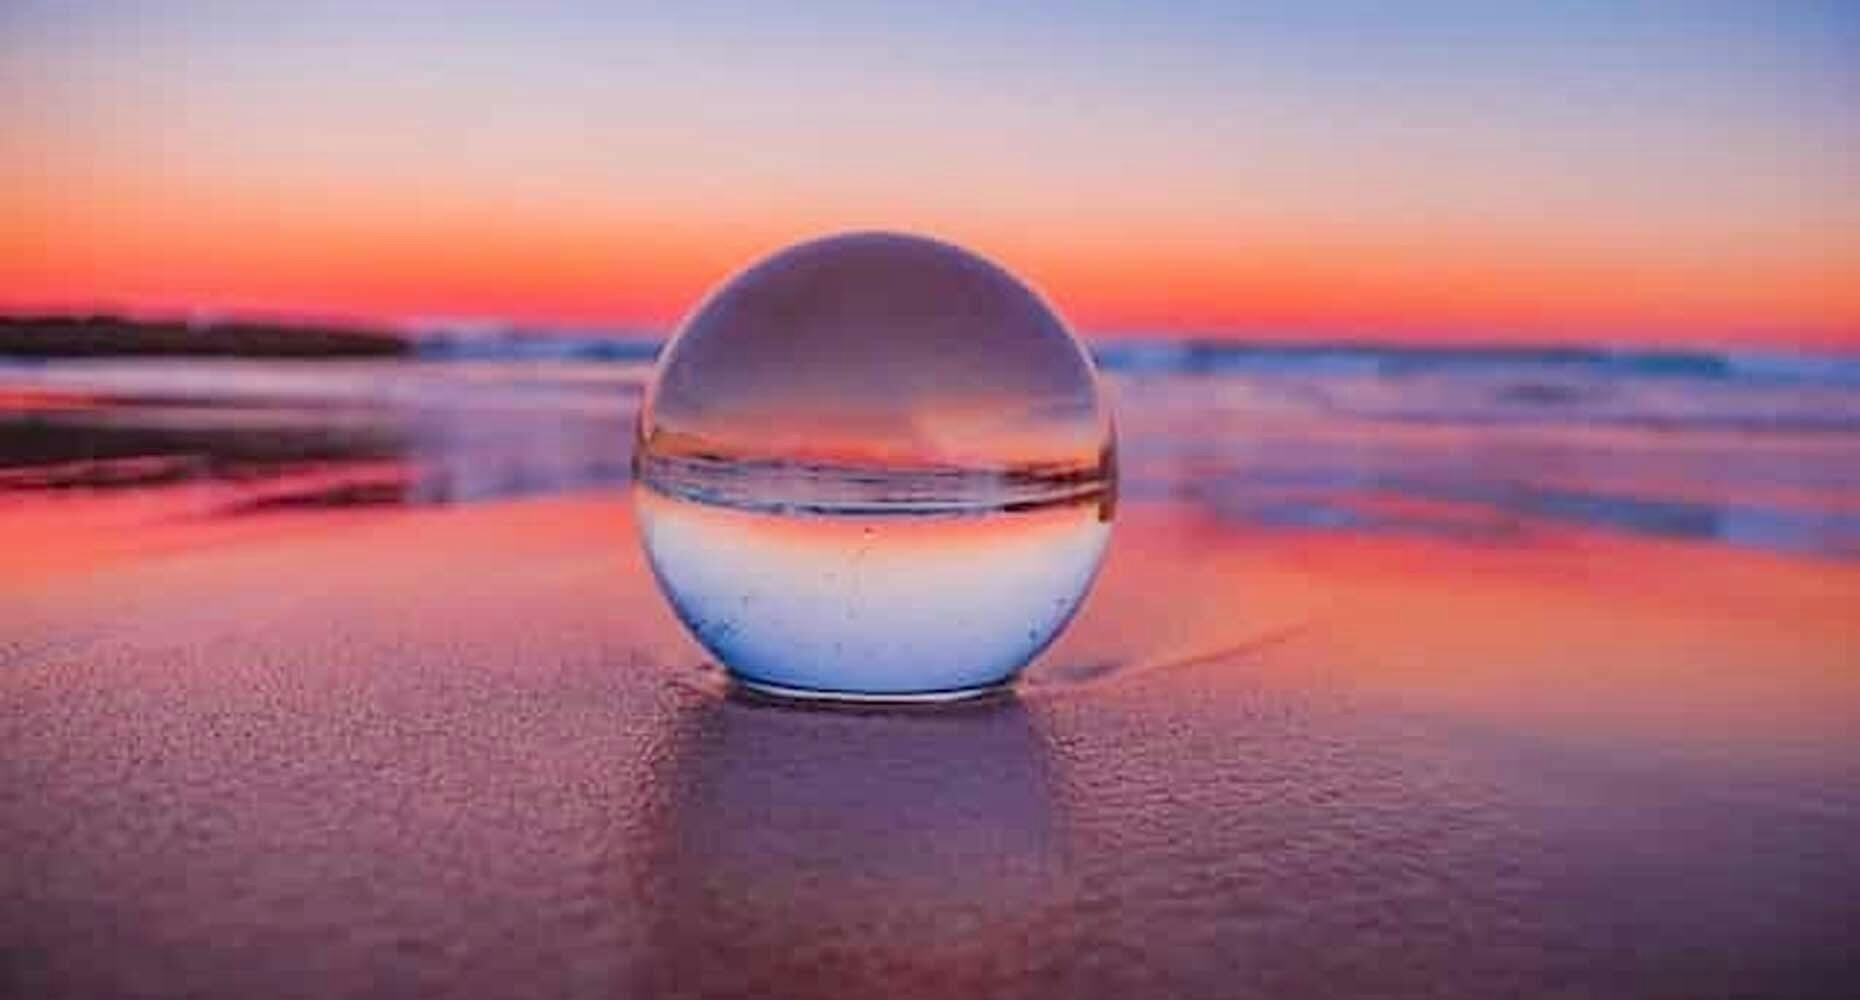 Crystal ball on the beach